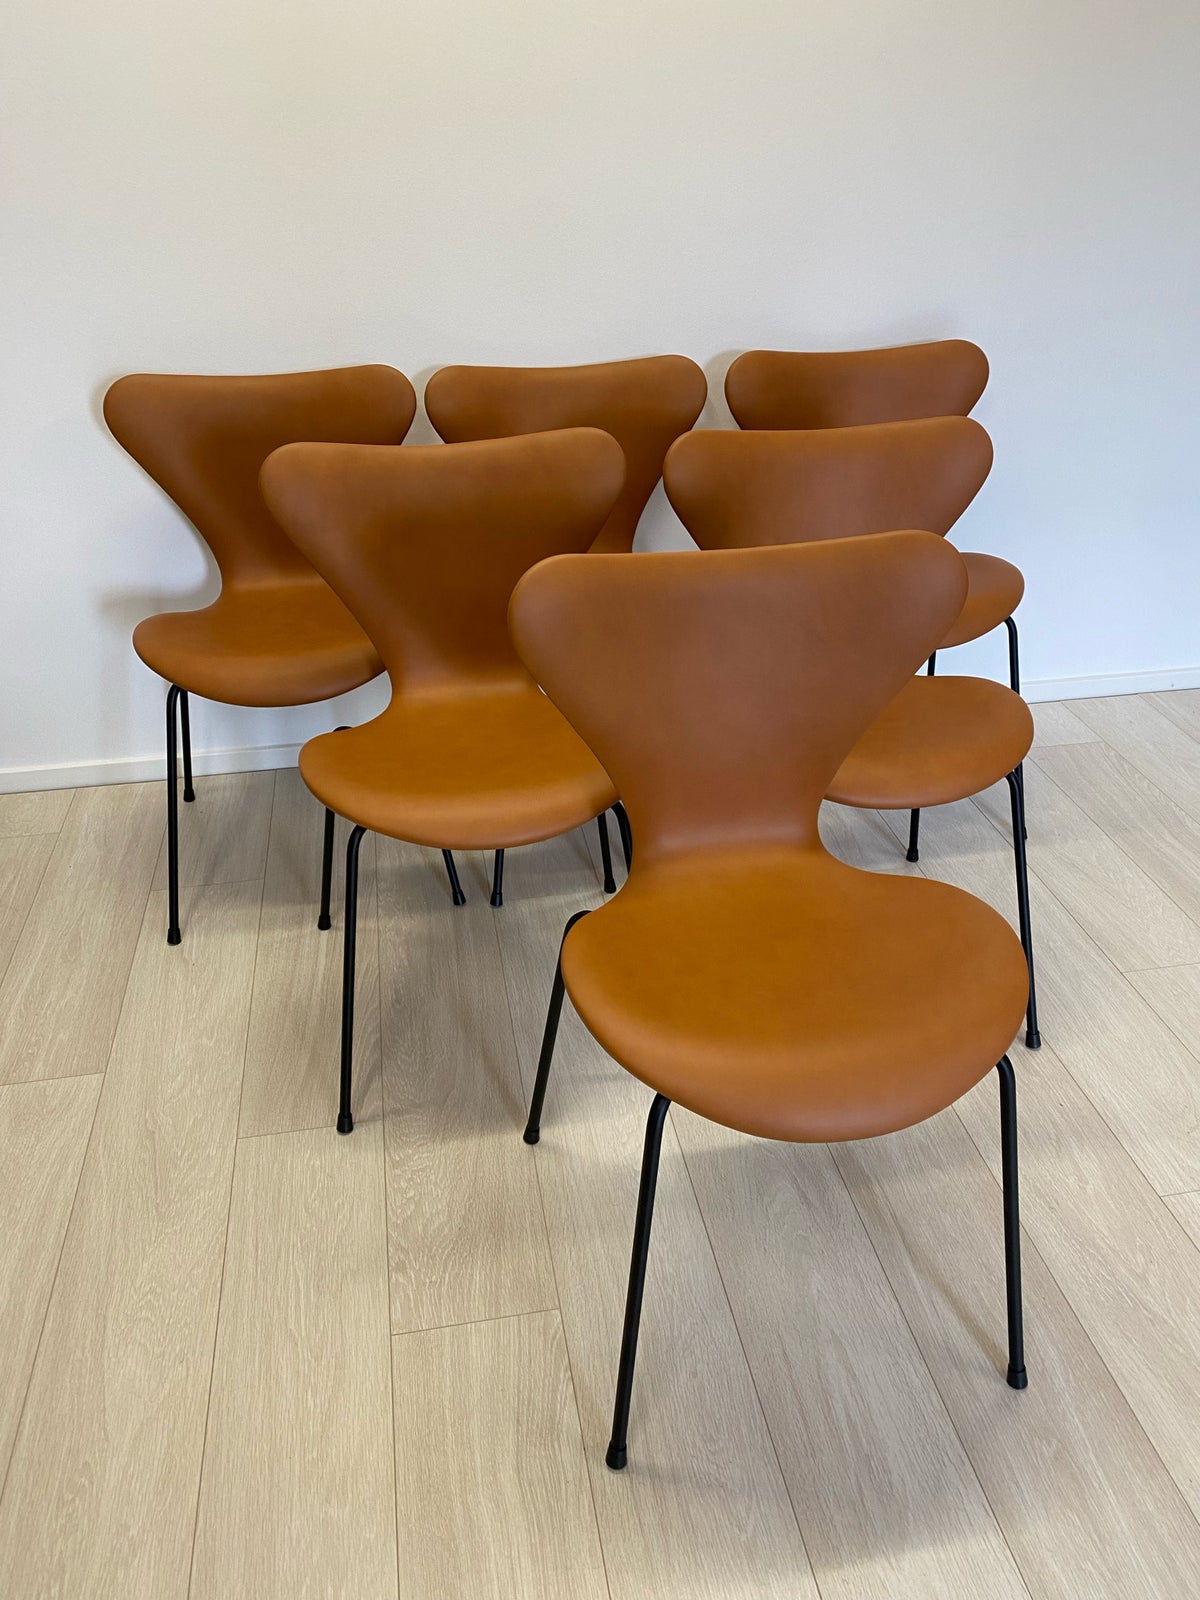 Arne Jacobsen, stol, 3107 syveren